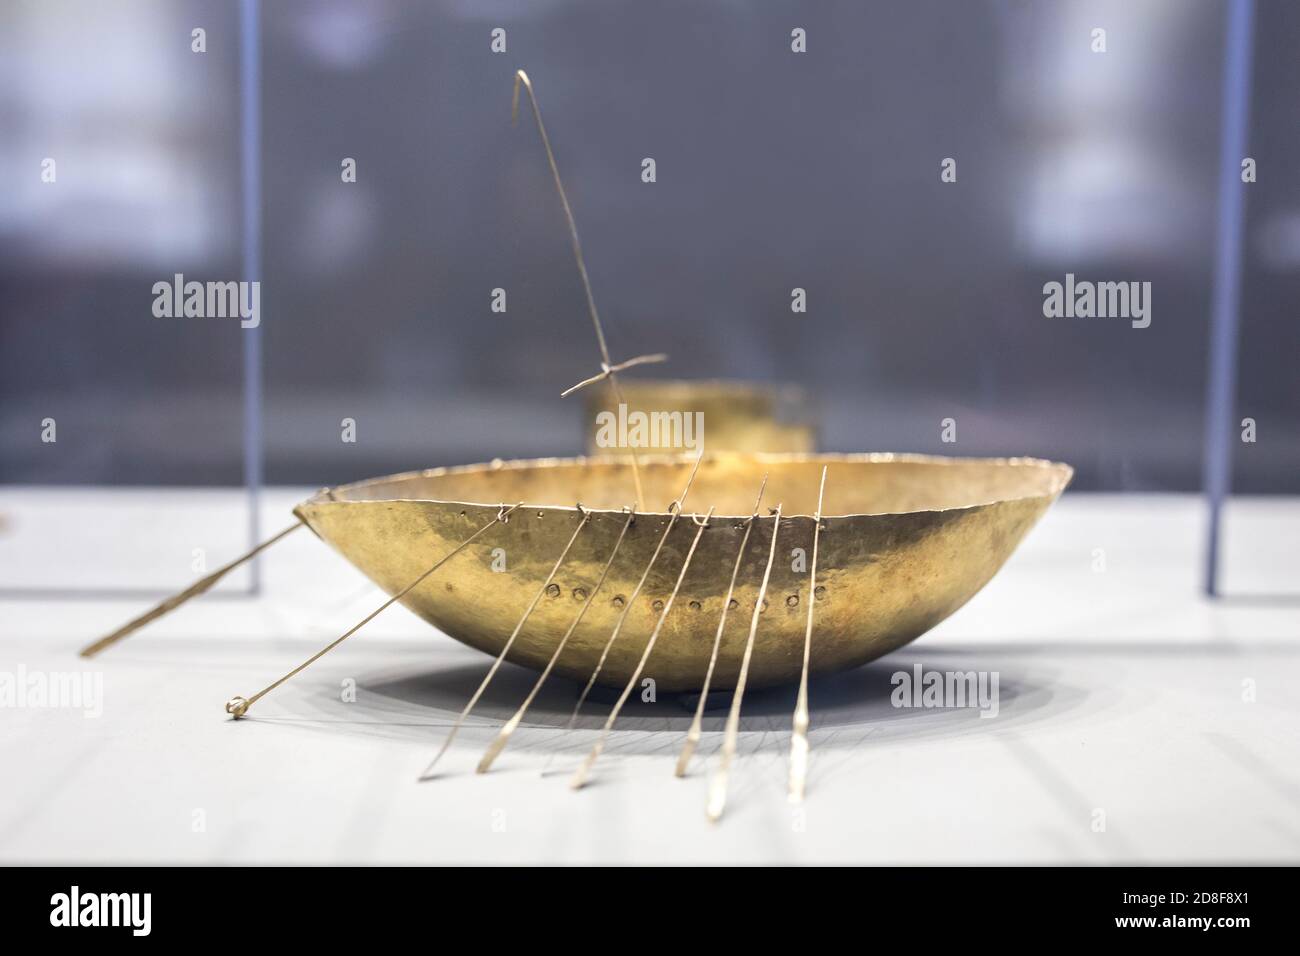 Dublin, Irland - 20. Feb 2020: Gold-Segelschiff. Artefakte, die zum Hortfund der Eisenzeit gehören. Archäologisches Nationalmuseum von Irland Stockfoto